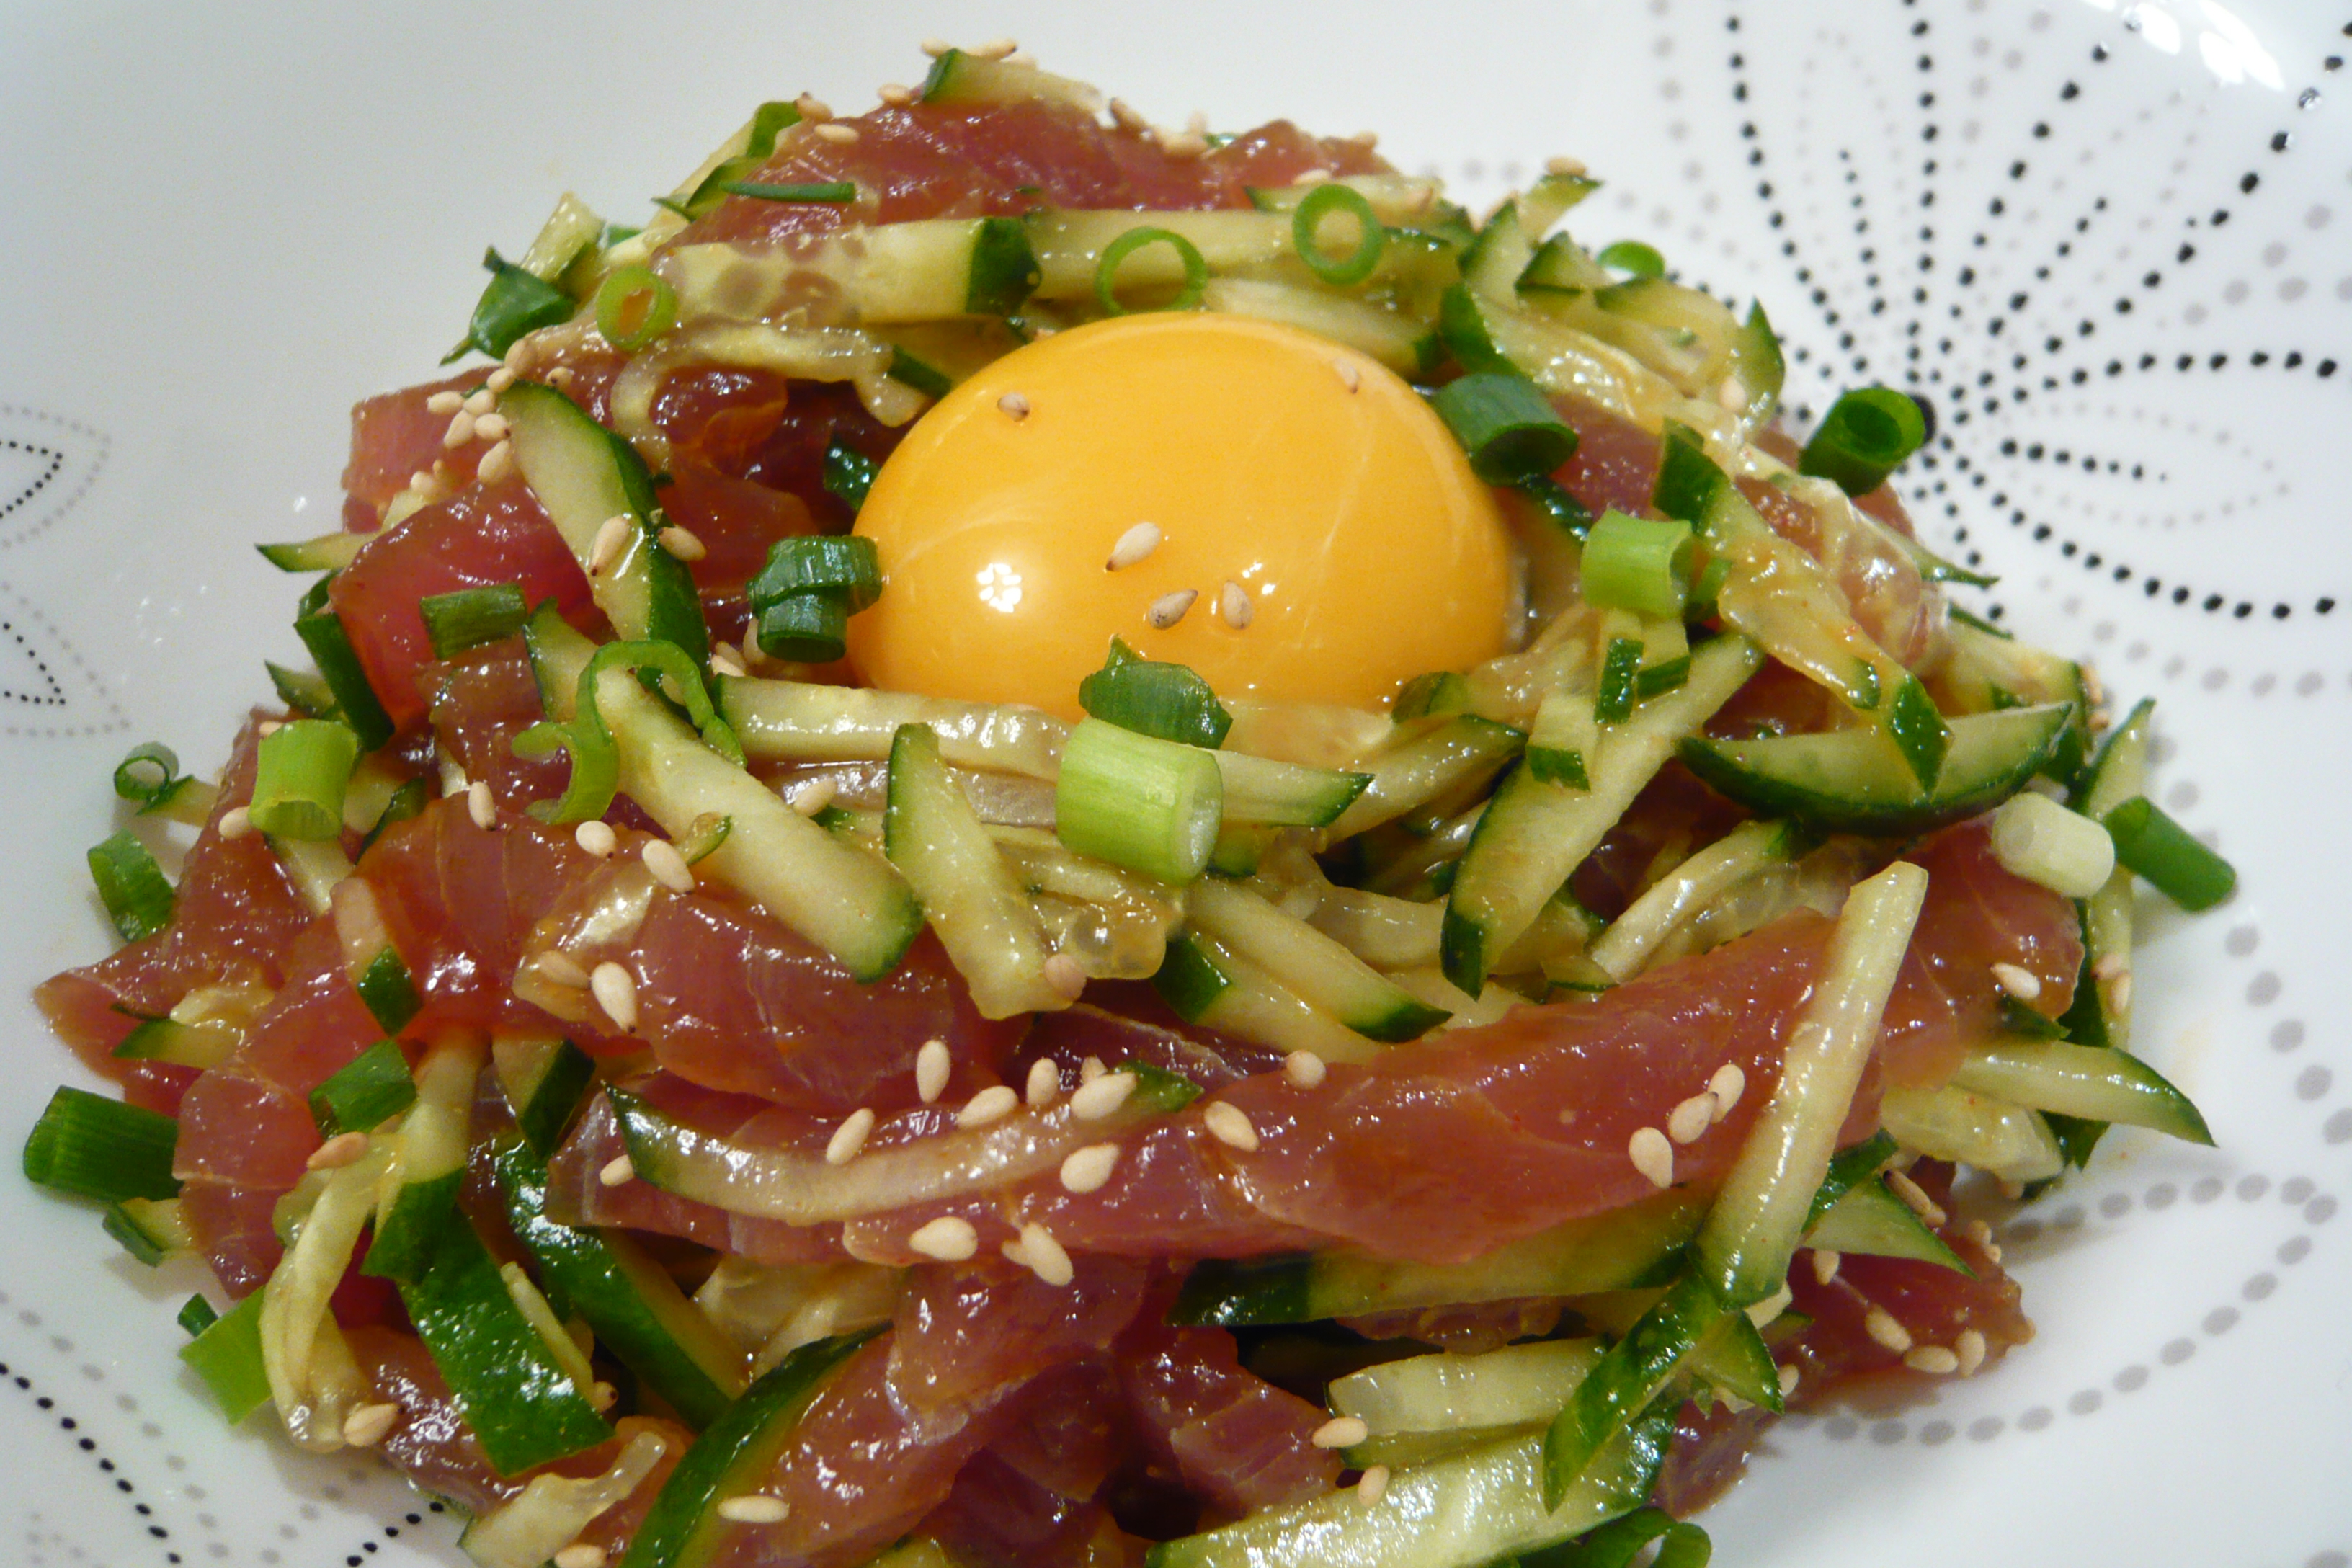 まぐろのユッケスタイルのレシピ 作り方 石田 ゆかり 料理教室検索サイト クスパ